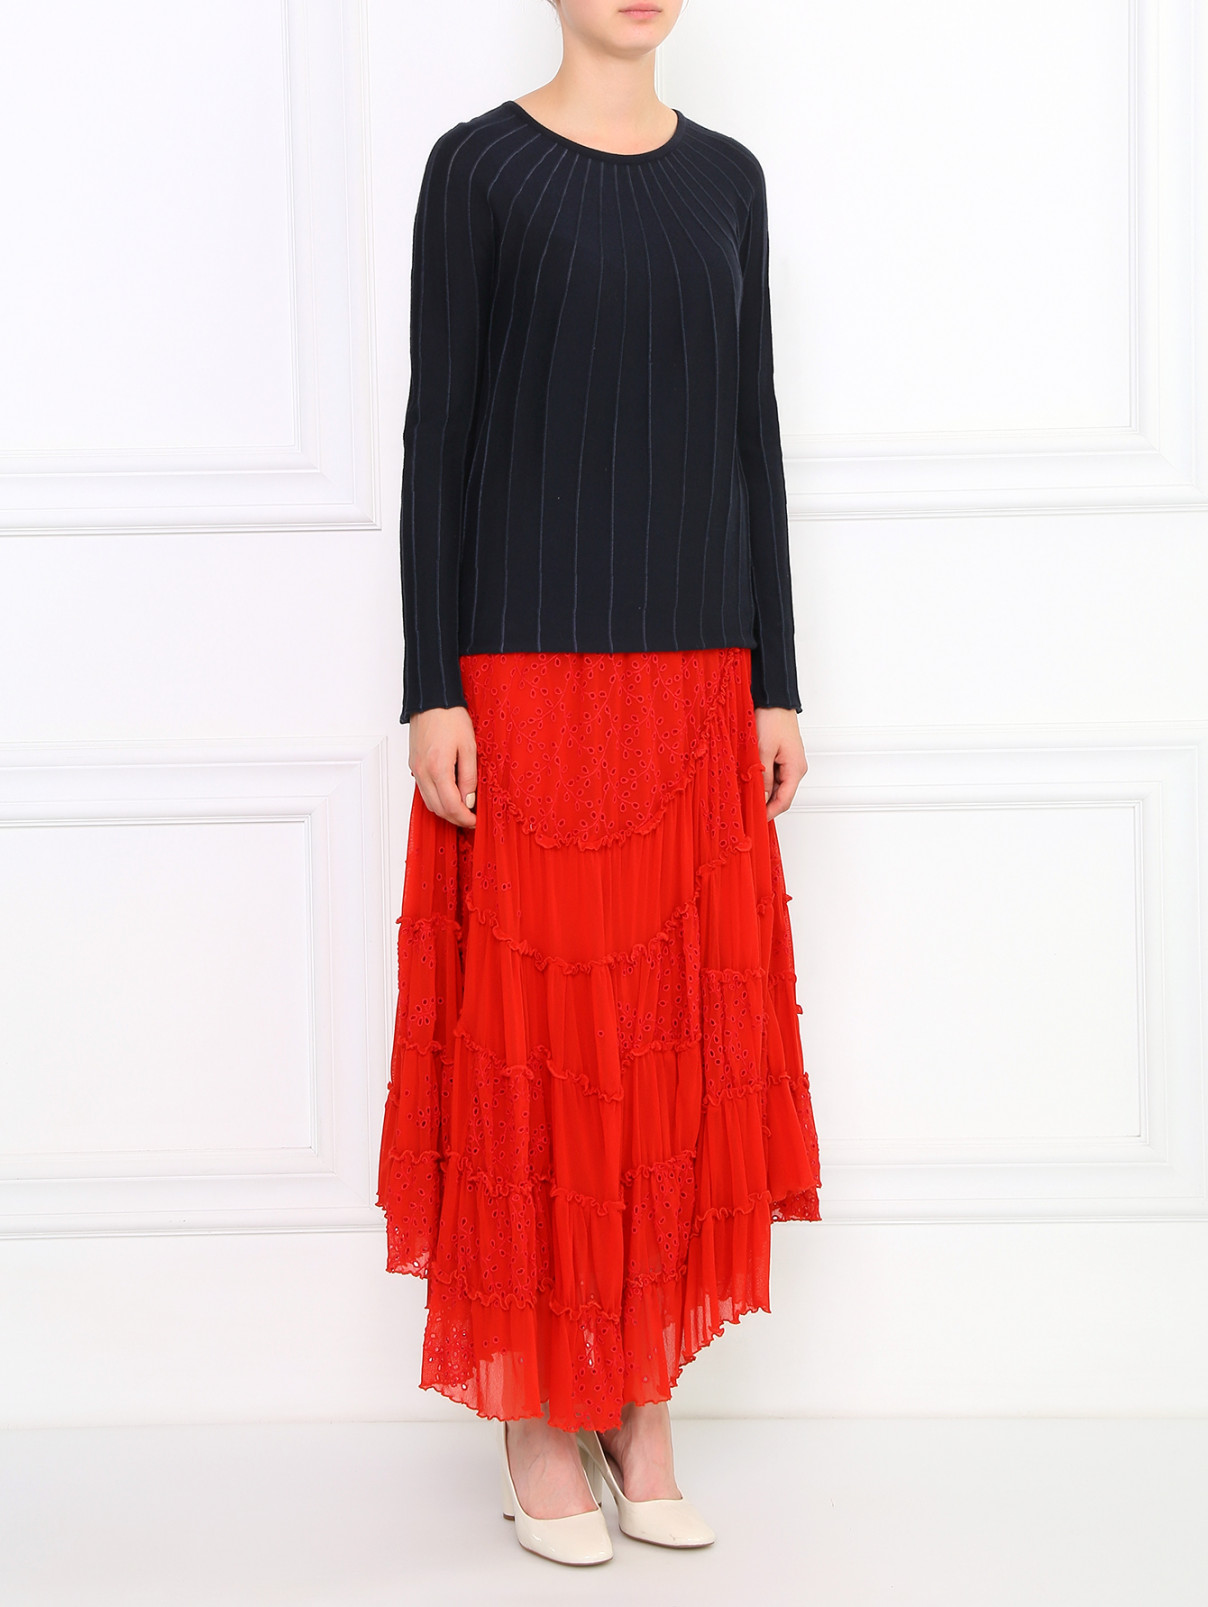 Кружевная юбка-миди на резинке Jean Paul Gaultier  –  Модель Общий вид  – Цвет:  Красный